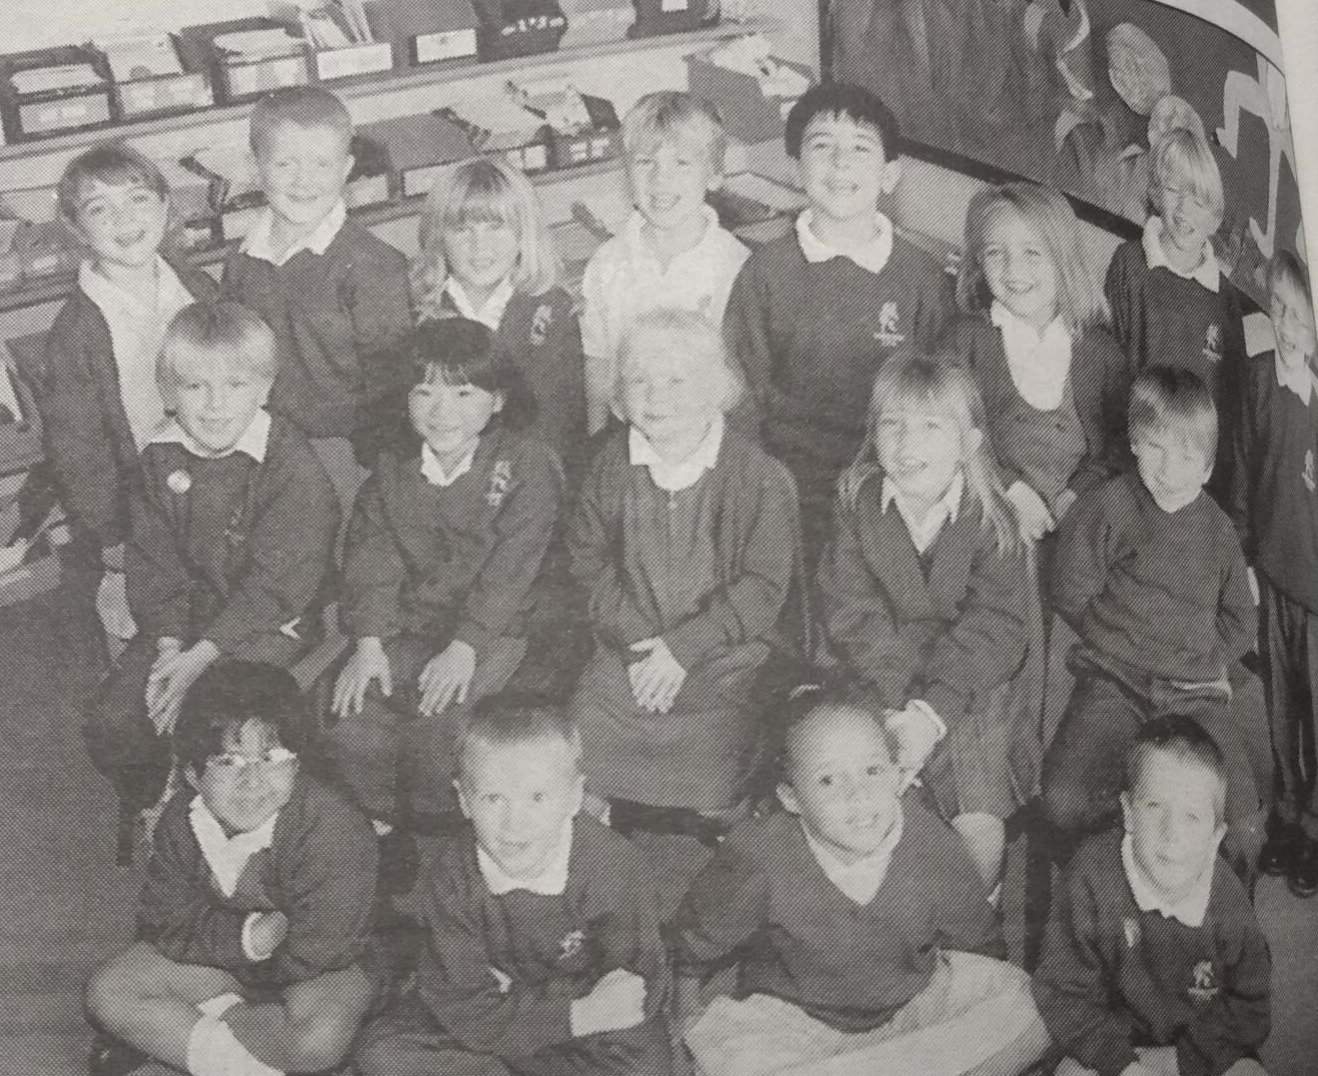 Winnersh Primary School students in September 1997